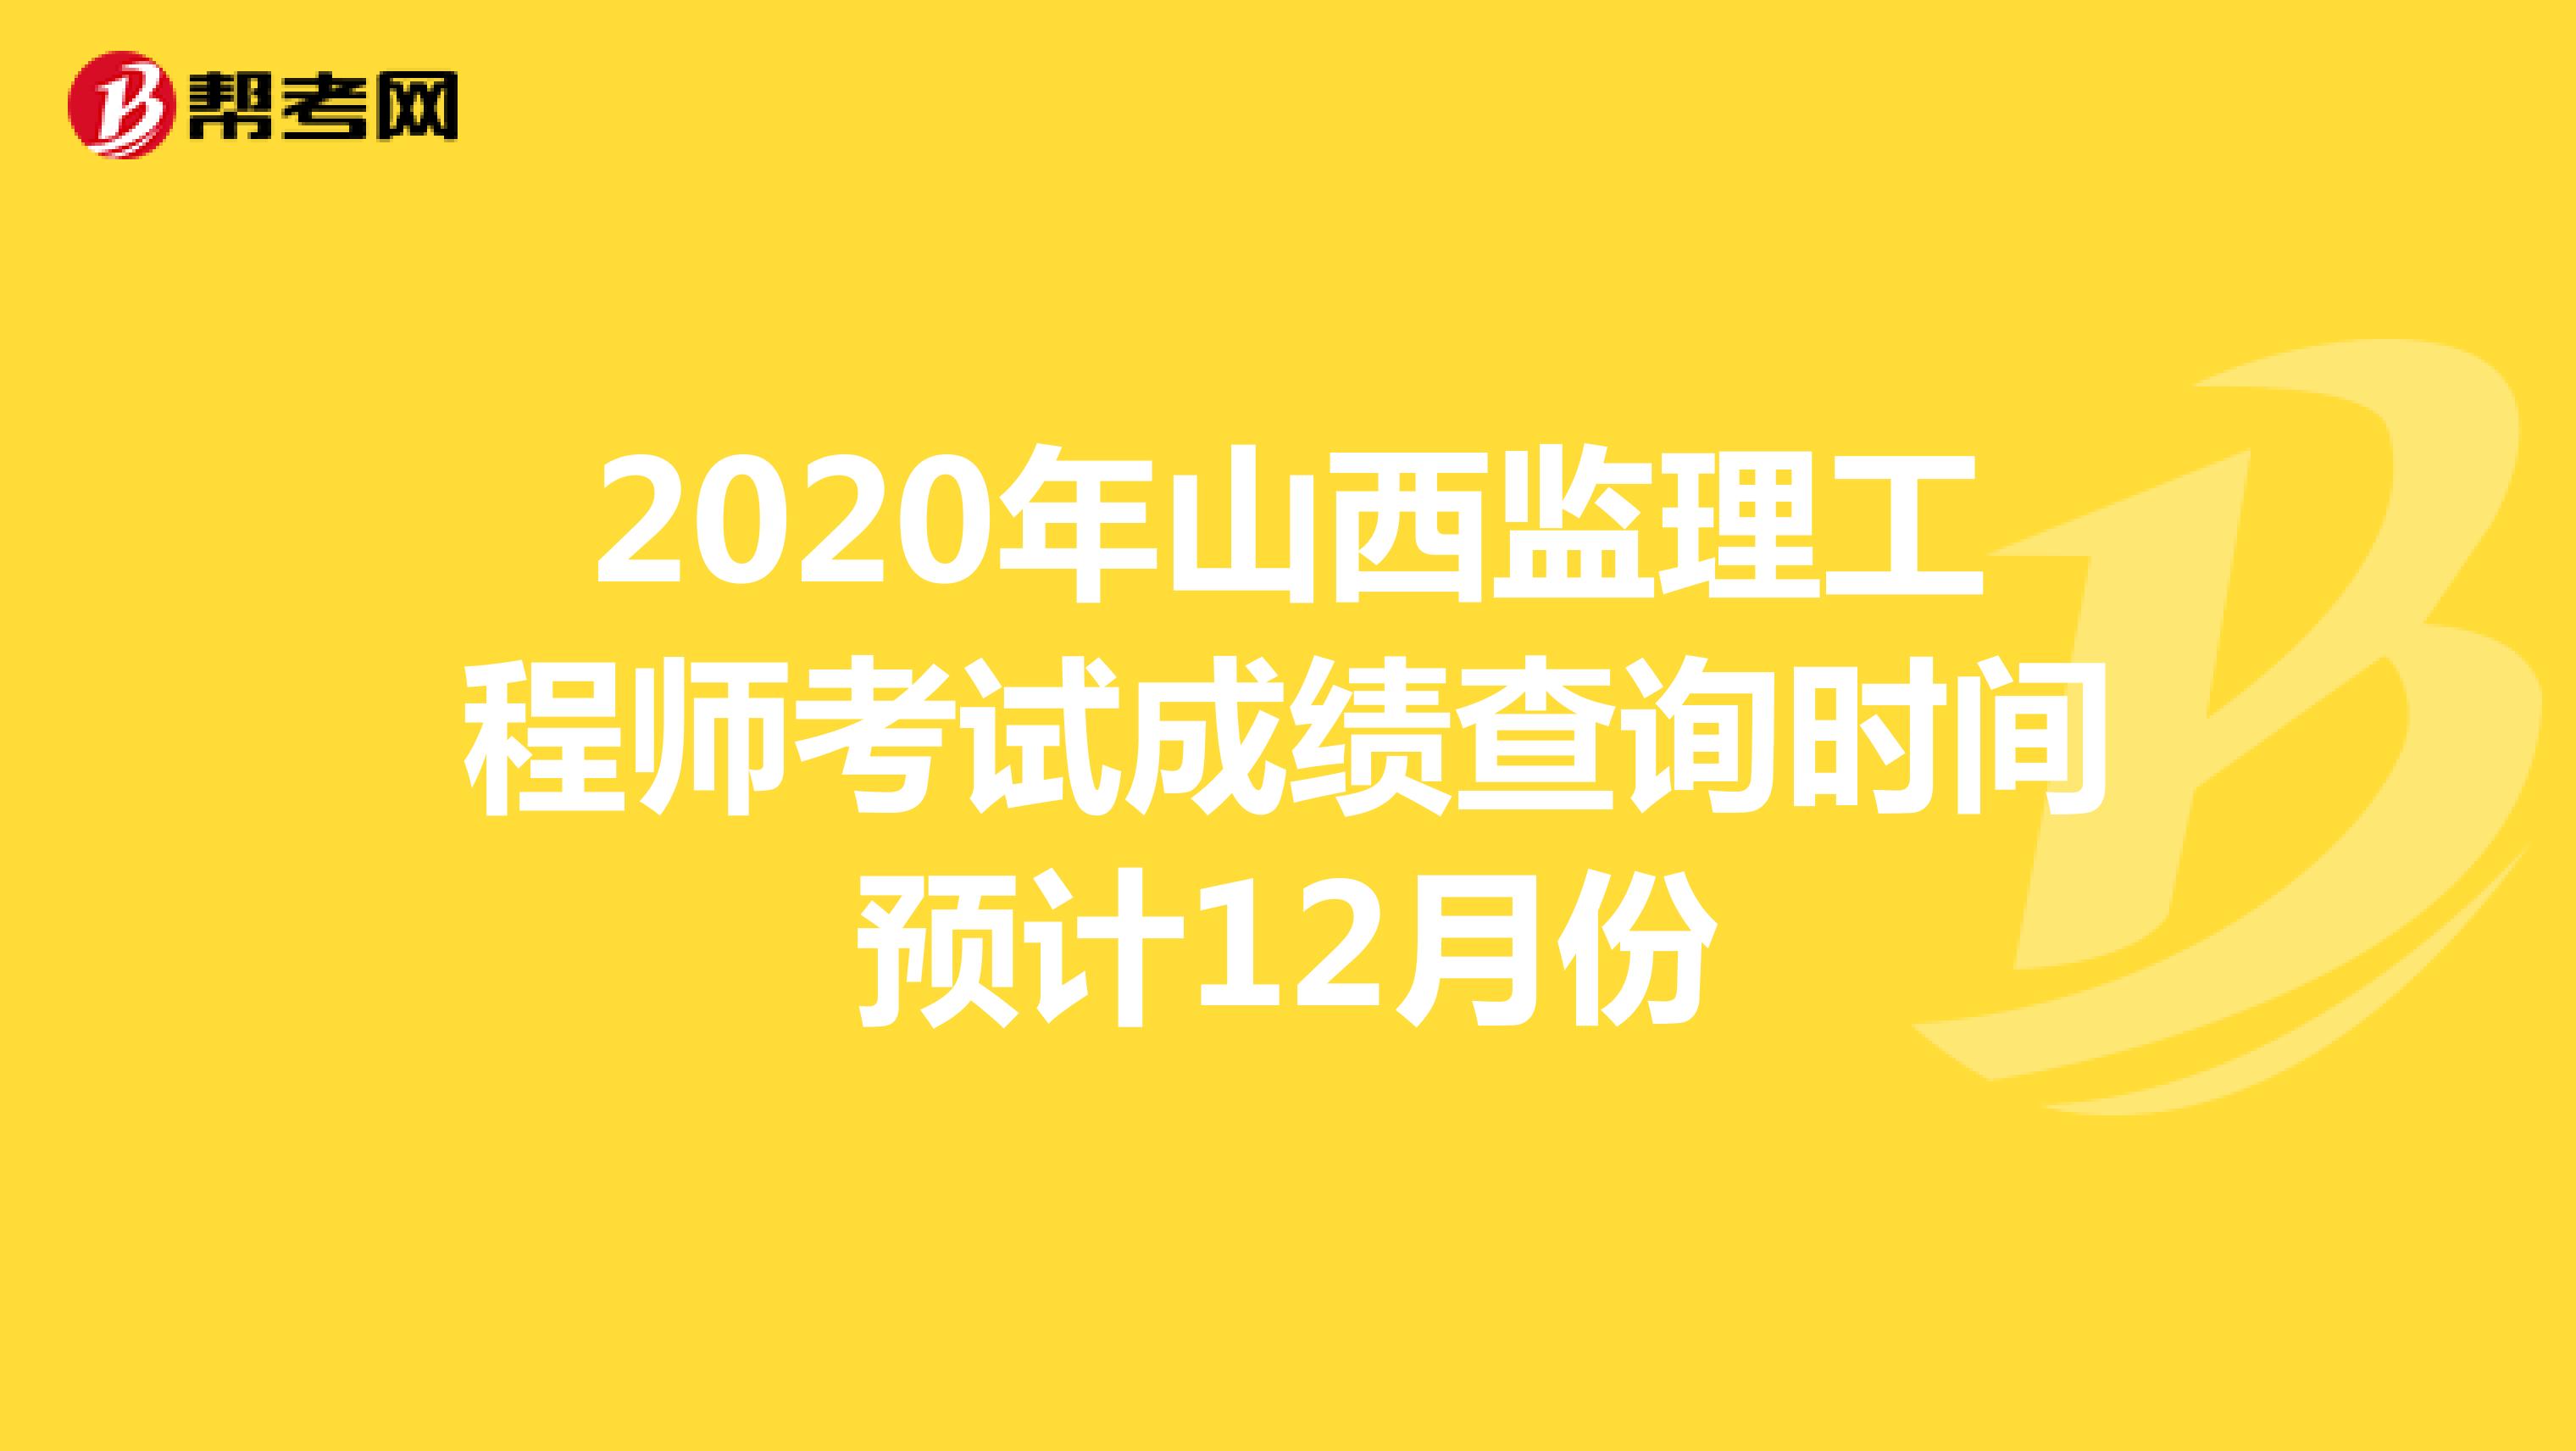 2020年山西监理工程师考试成绩查询时间预计12月份